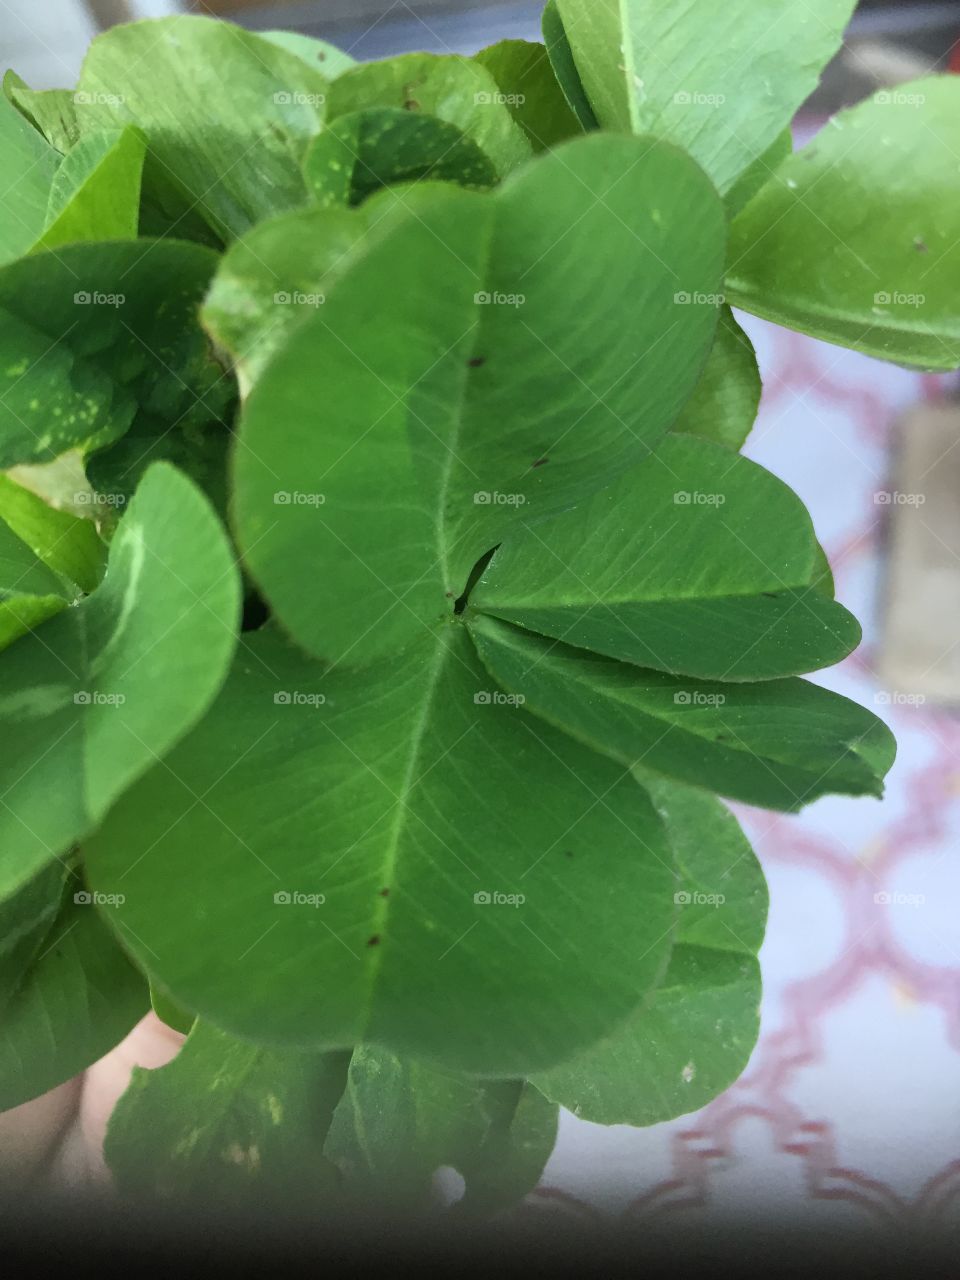 4 leaf clover